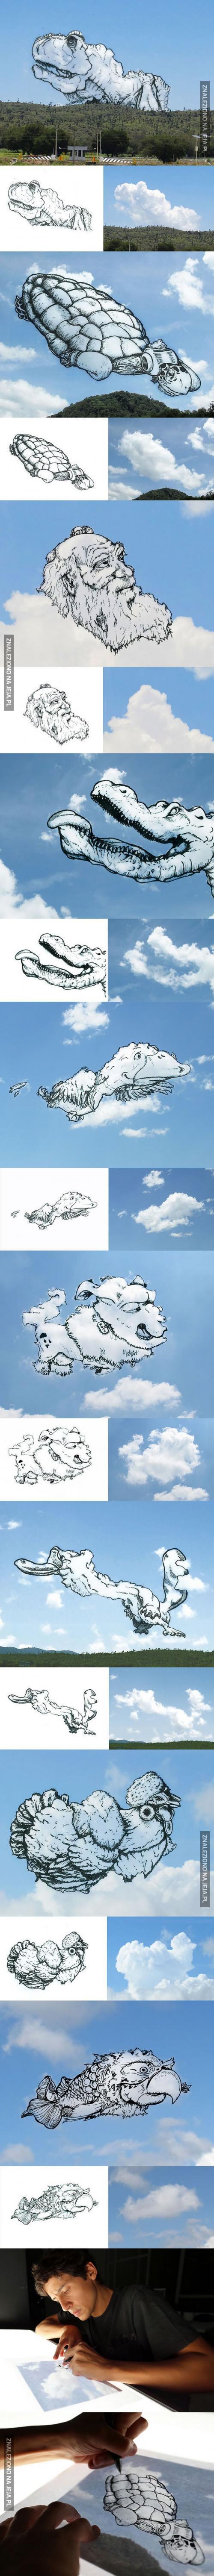 Artysta przemienia chmury w ilustracje